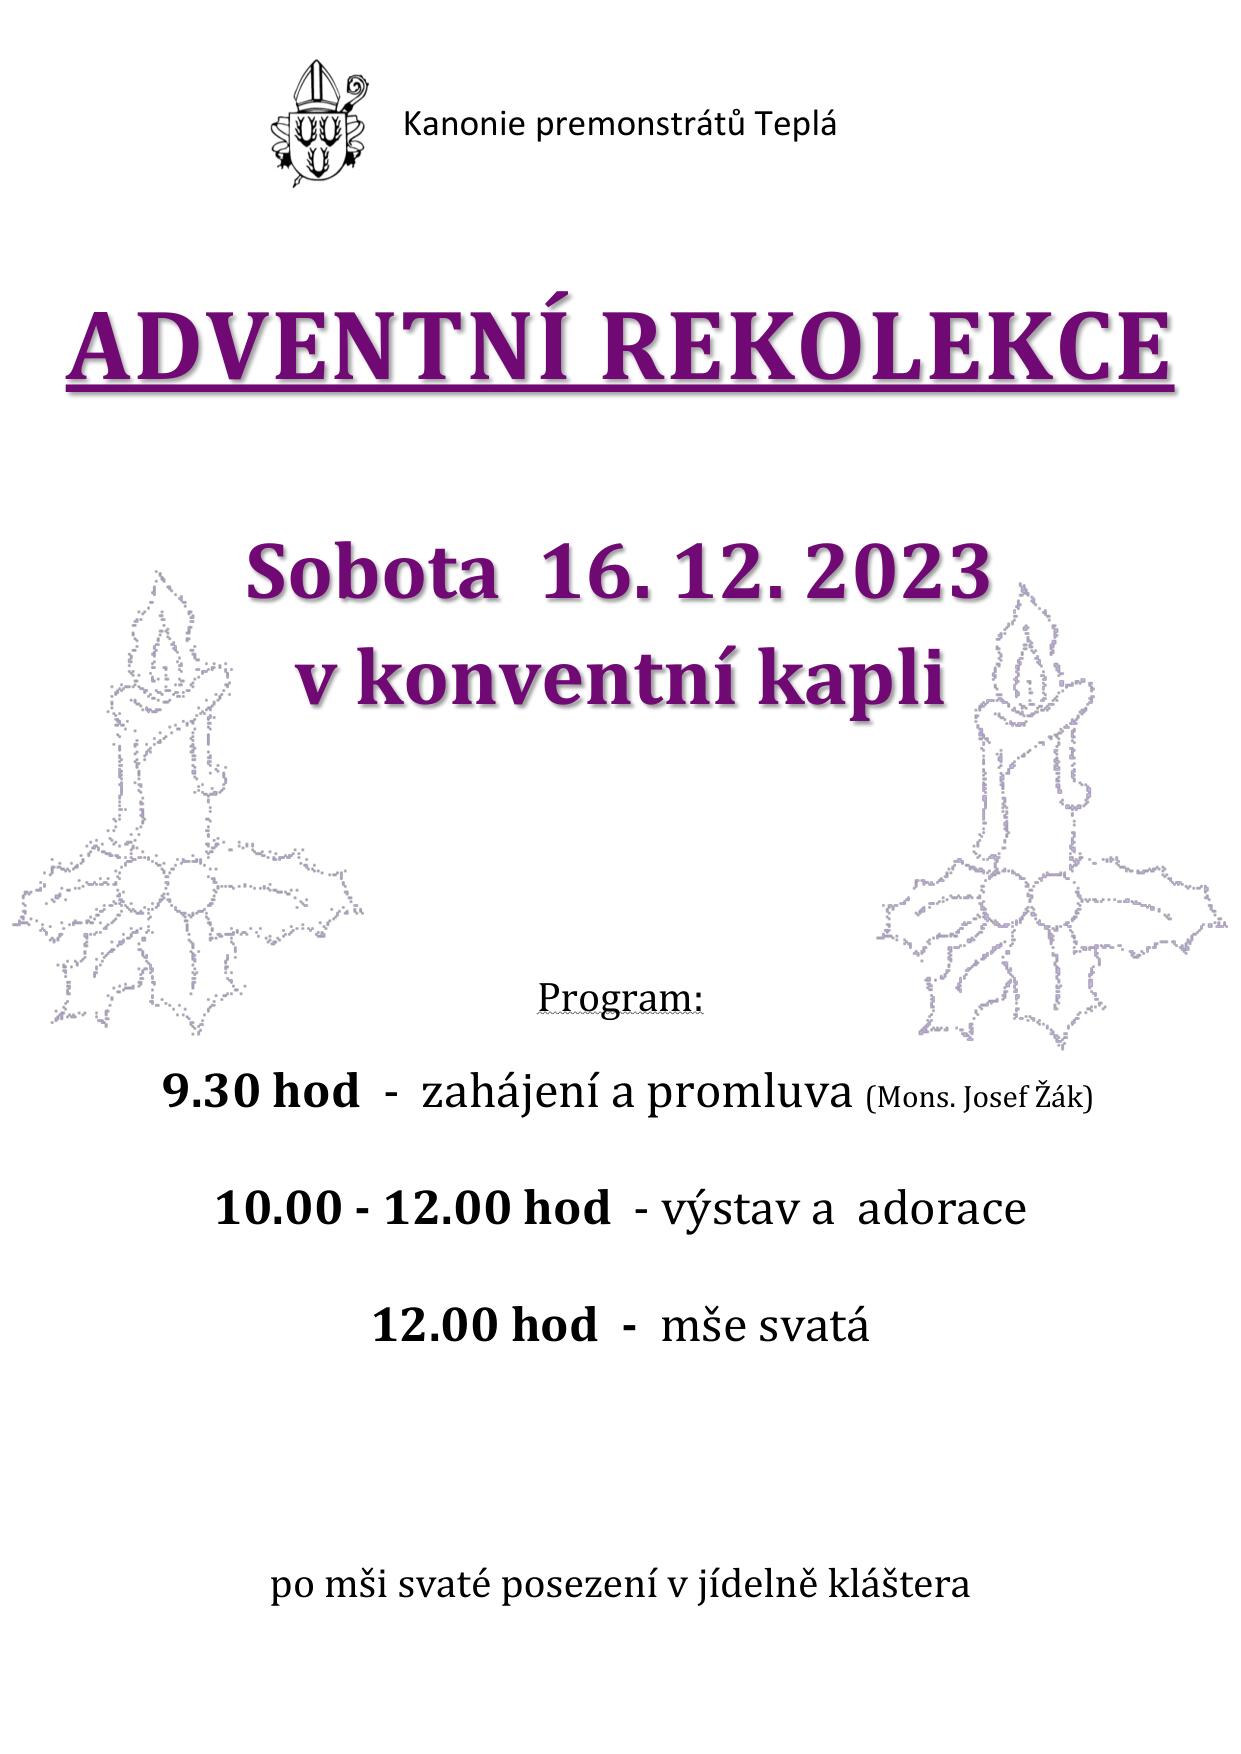 Adventni rekolekce 16 12 2023